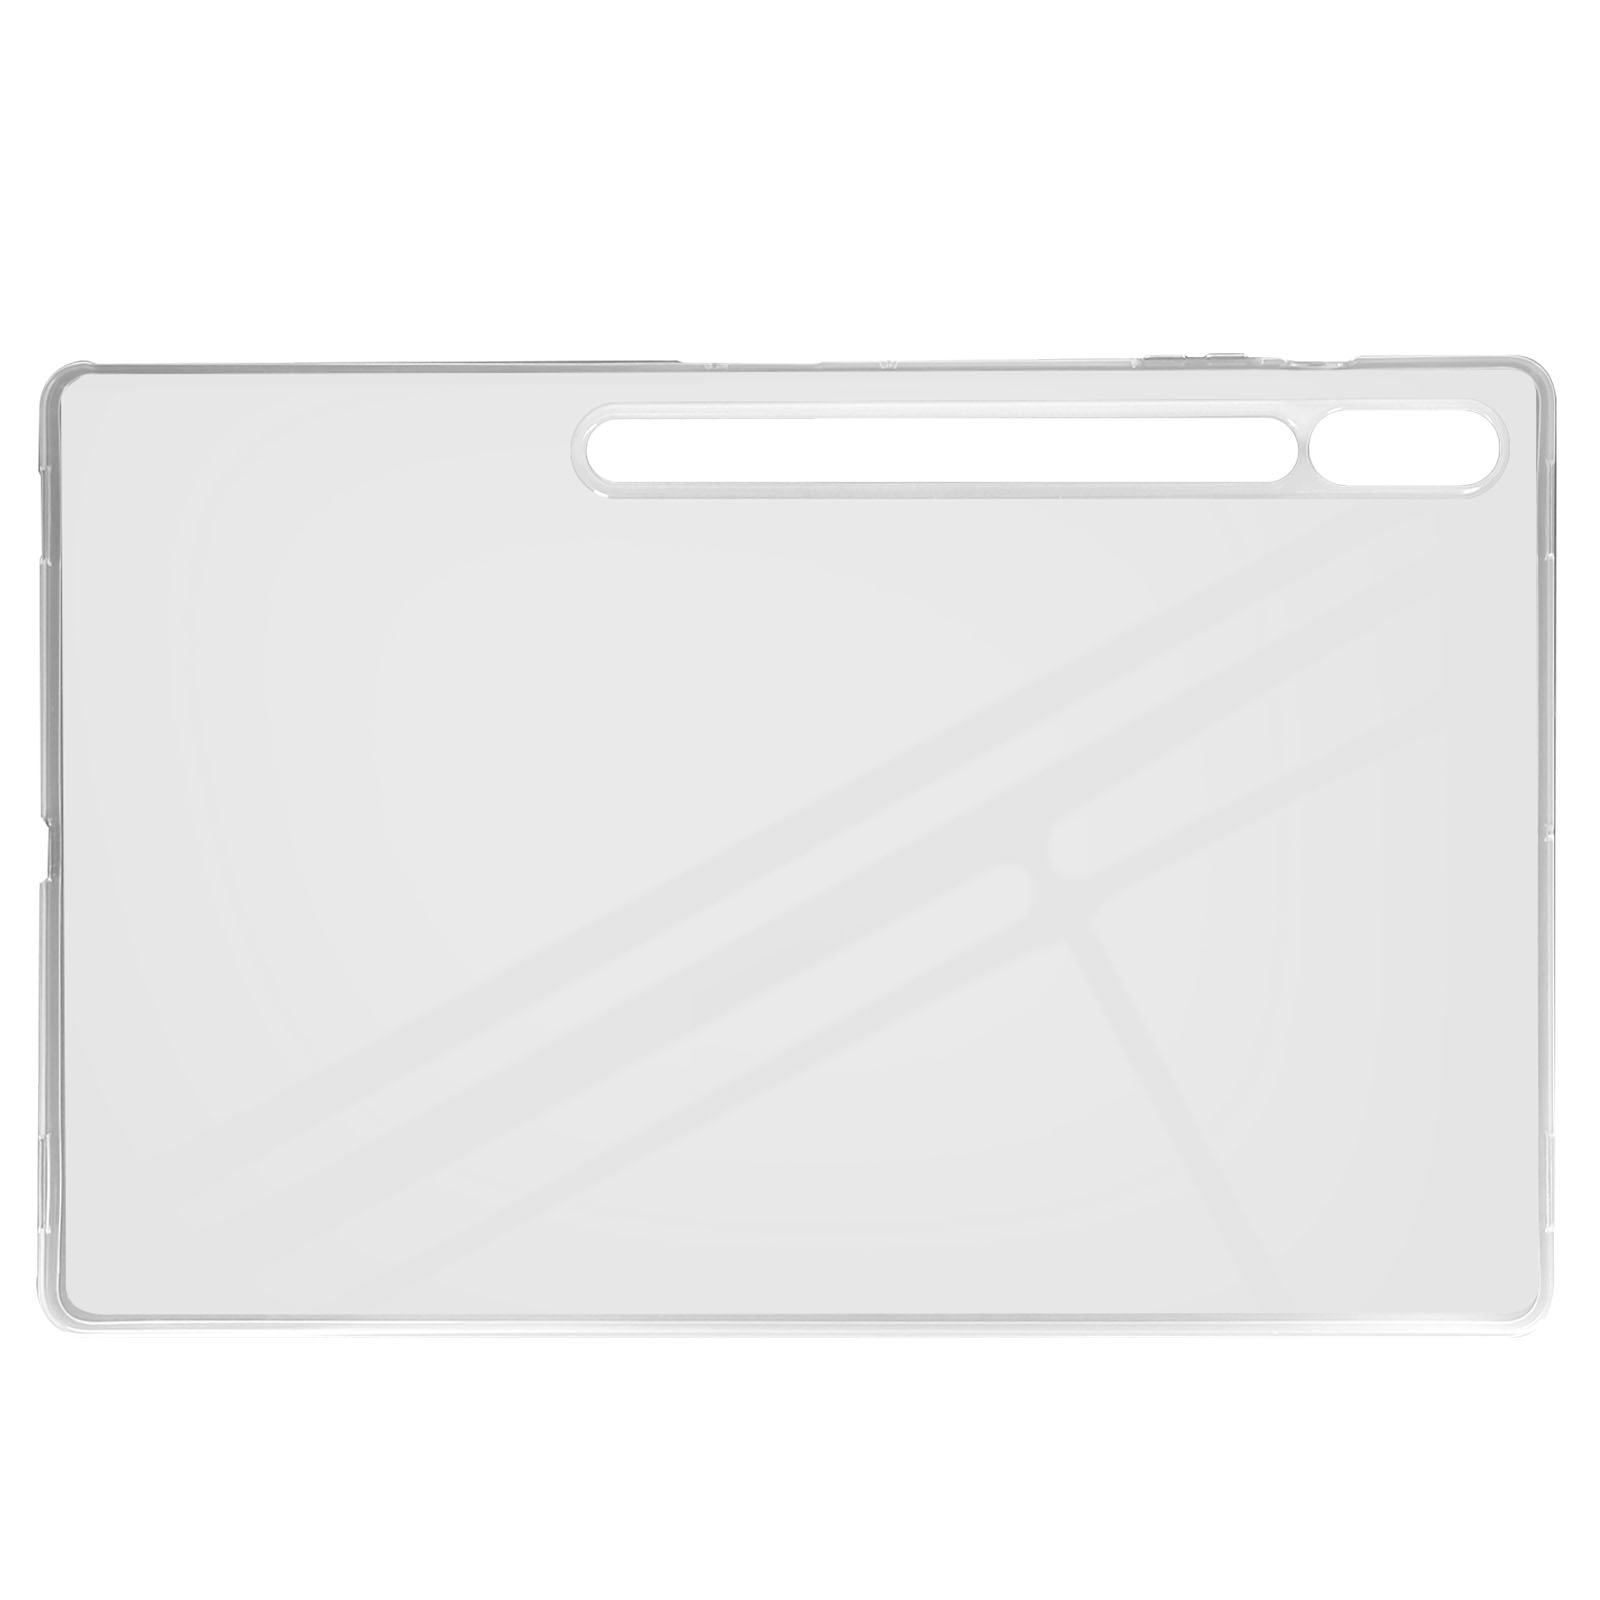 AVIZAR Classic Case Series Schutzhüllen Backcover Transparent für Silikongel, Samsung